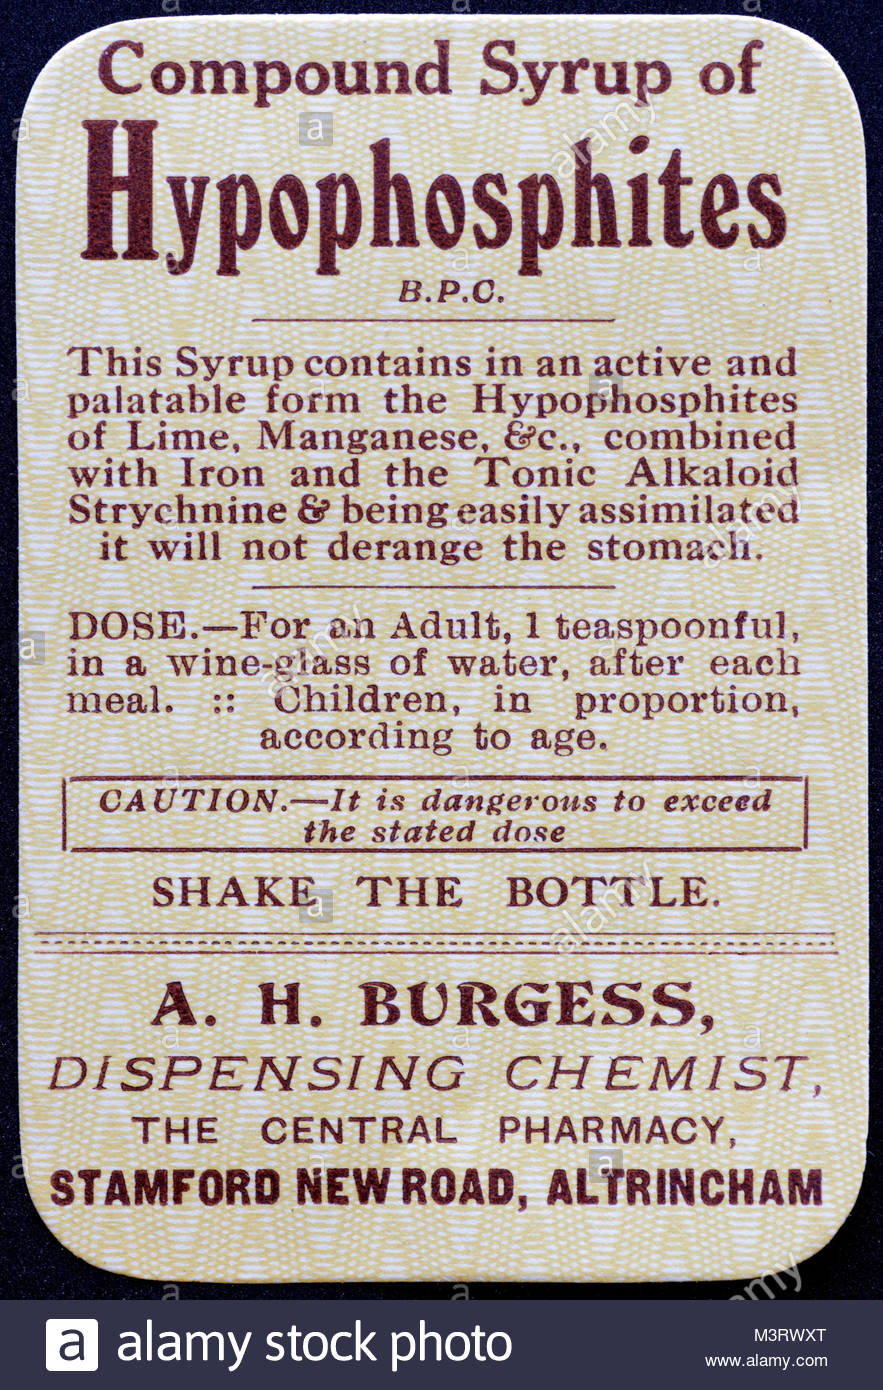 Vintage Chemist labels for Medicine bottles 1950s - Compound Syrup of Hypophosphites Stock Photo